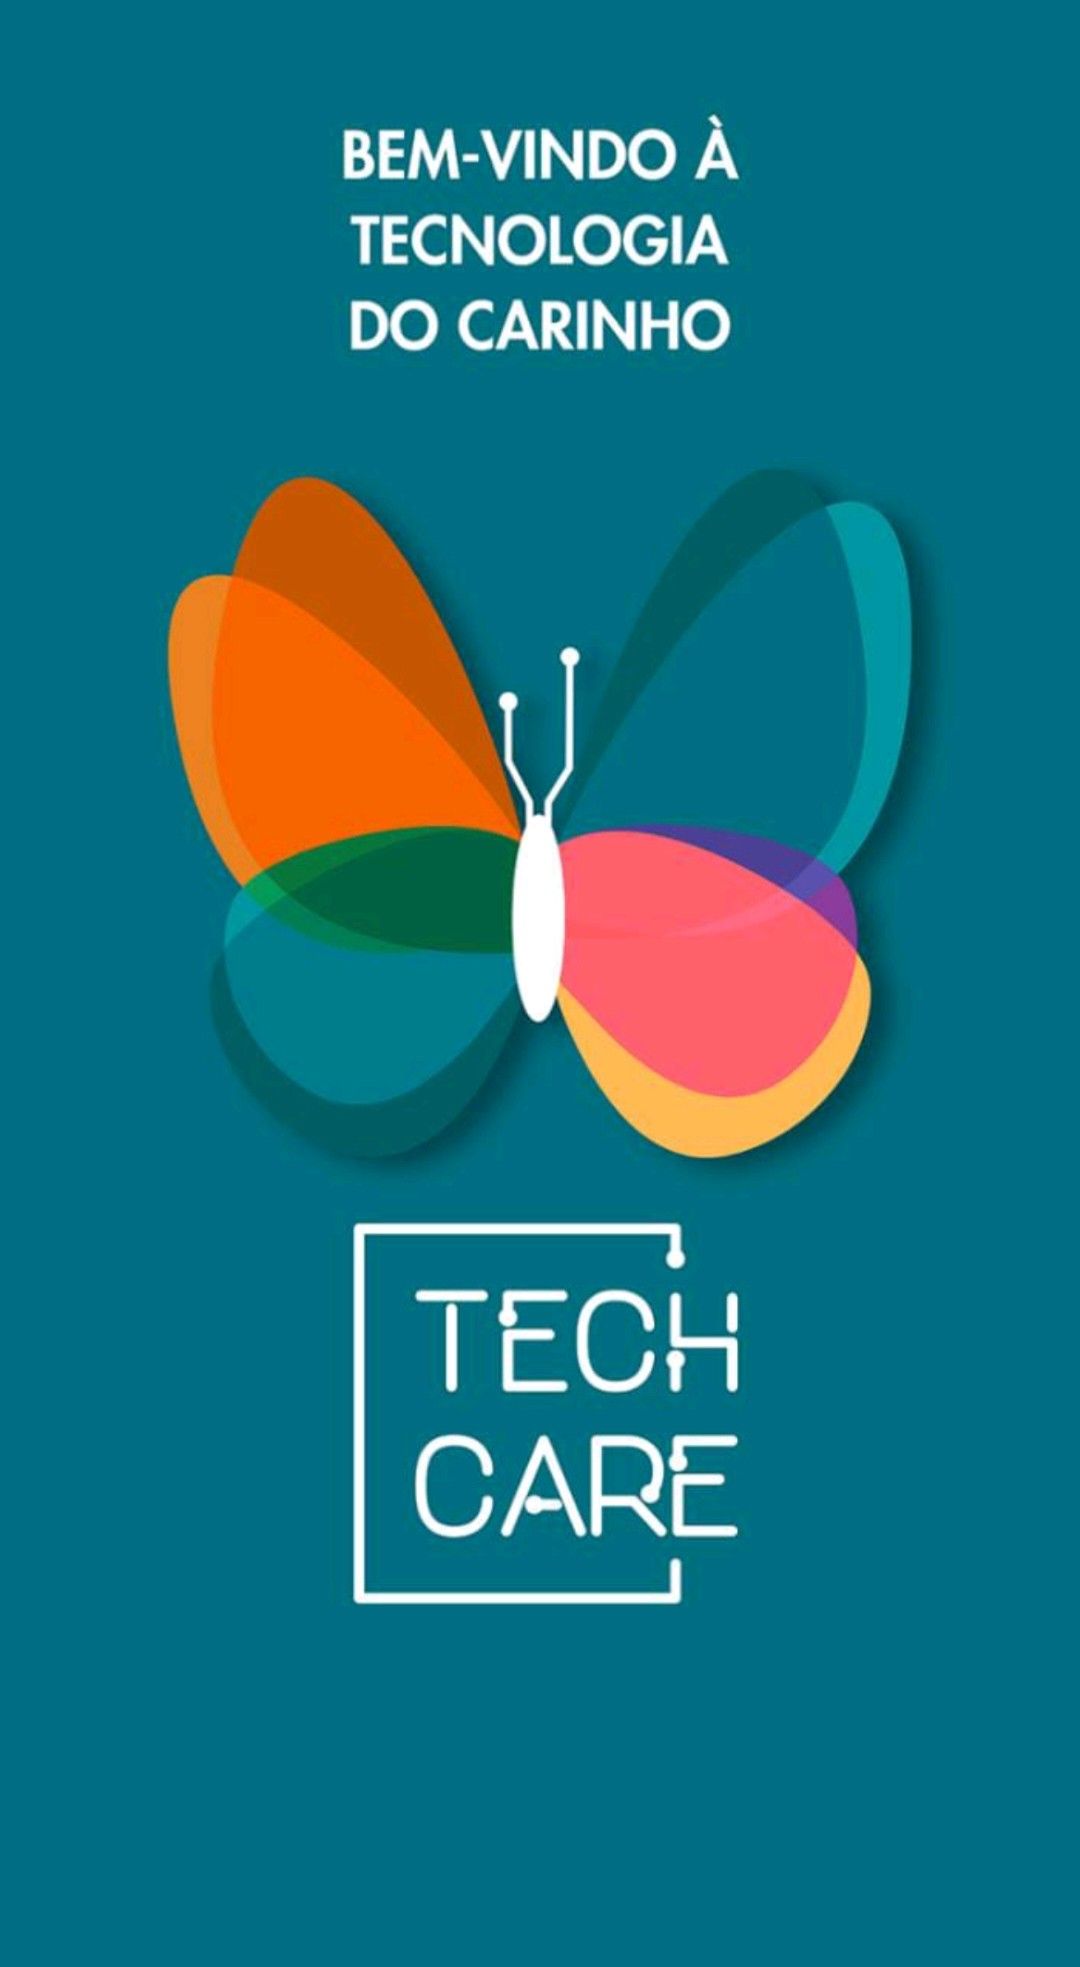 Tech care